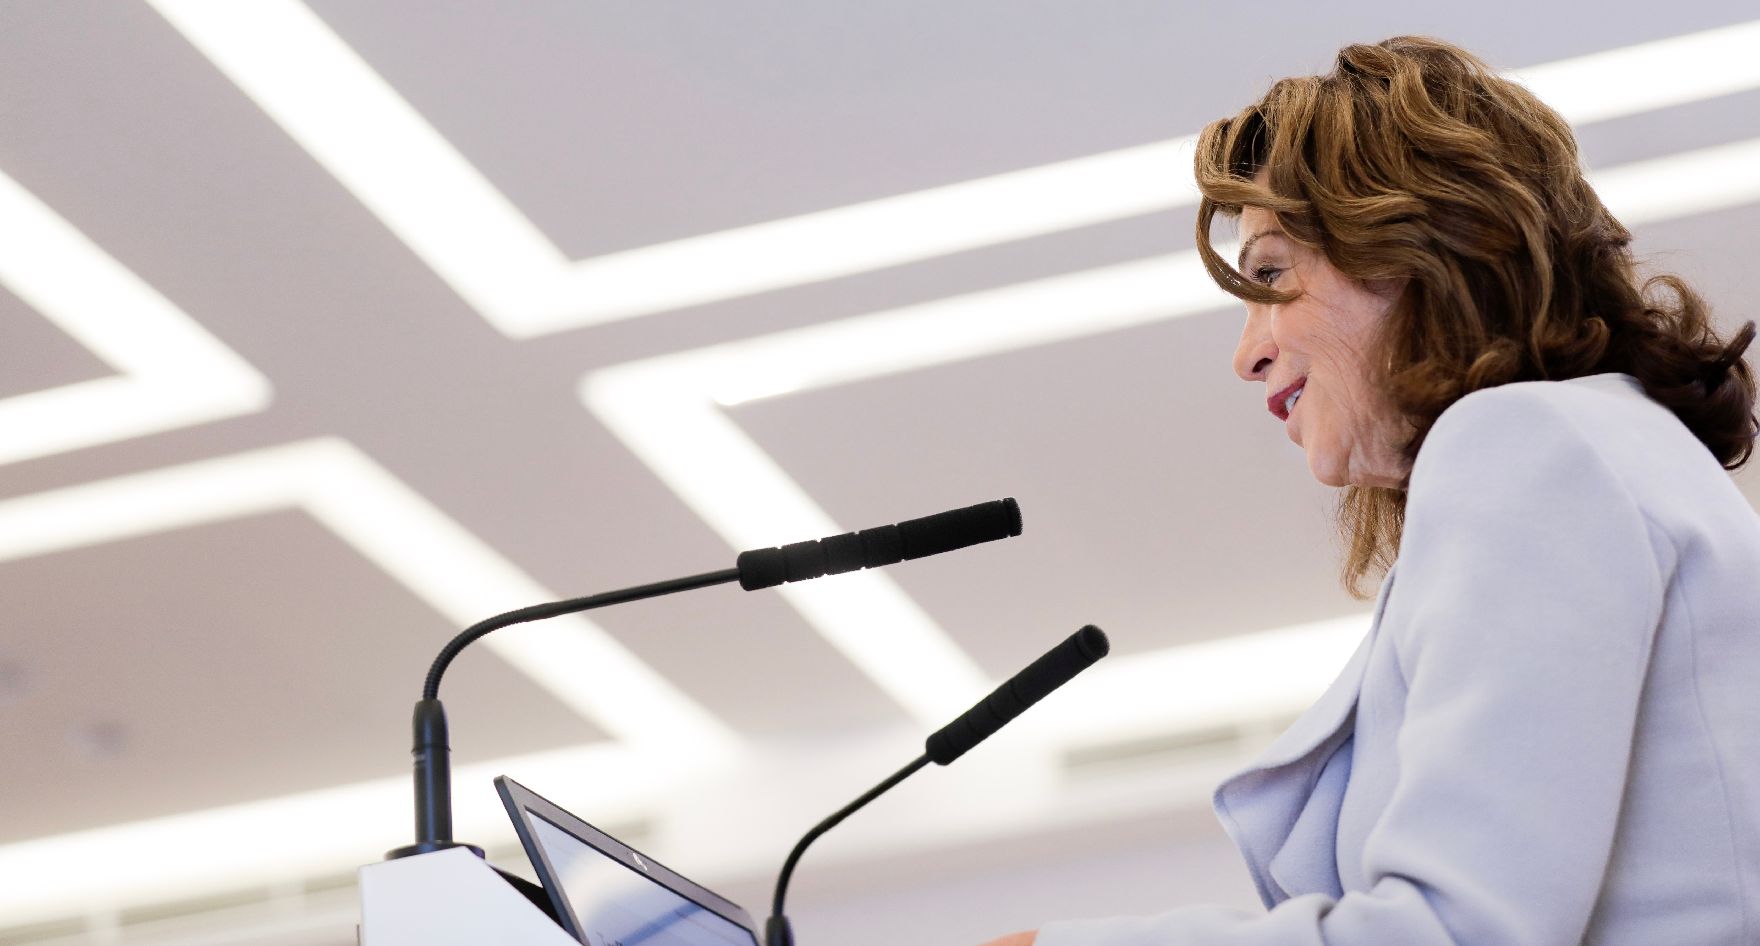 Am 11. Oktober 2019 nahm Bundeskanzlerin Brigitte Bierlein (im Bild) an dem Treffen der deutschsprachigen Ethikkommissionen zum Thema "Desinformation in der Medizin" teil.